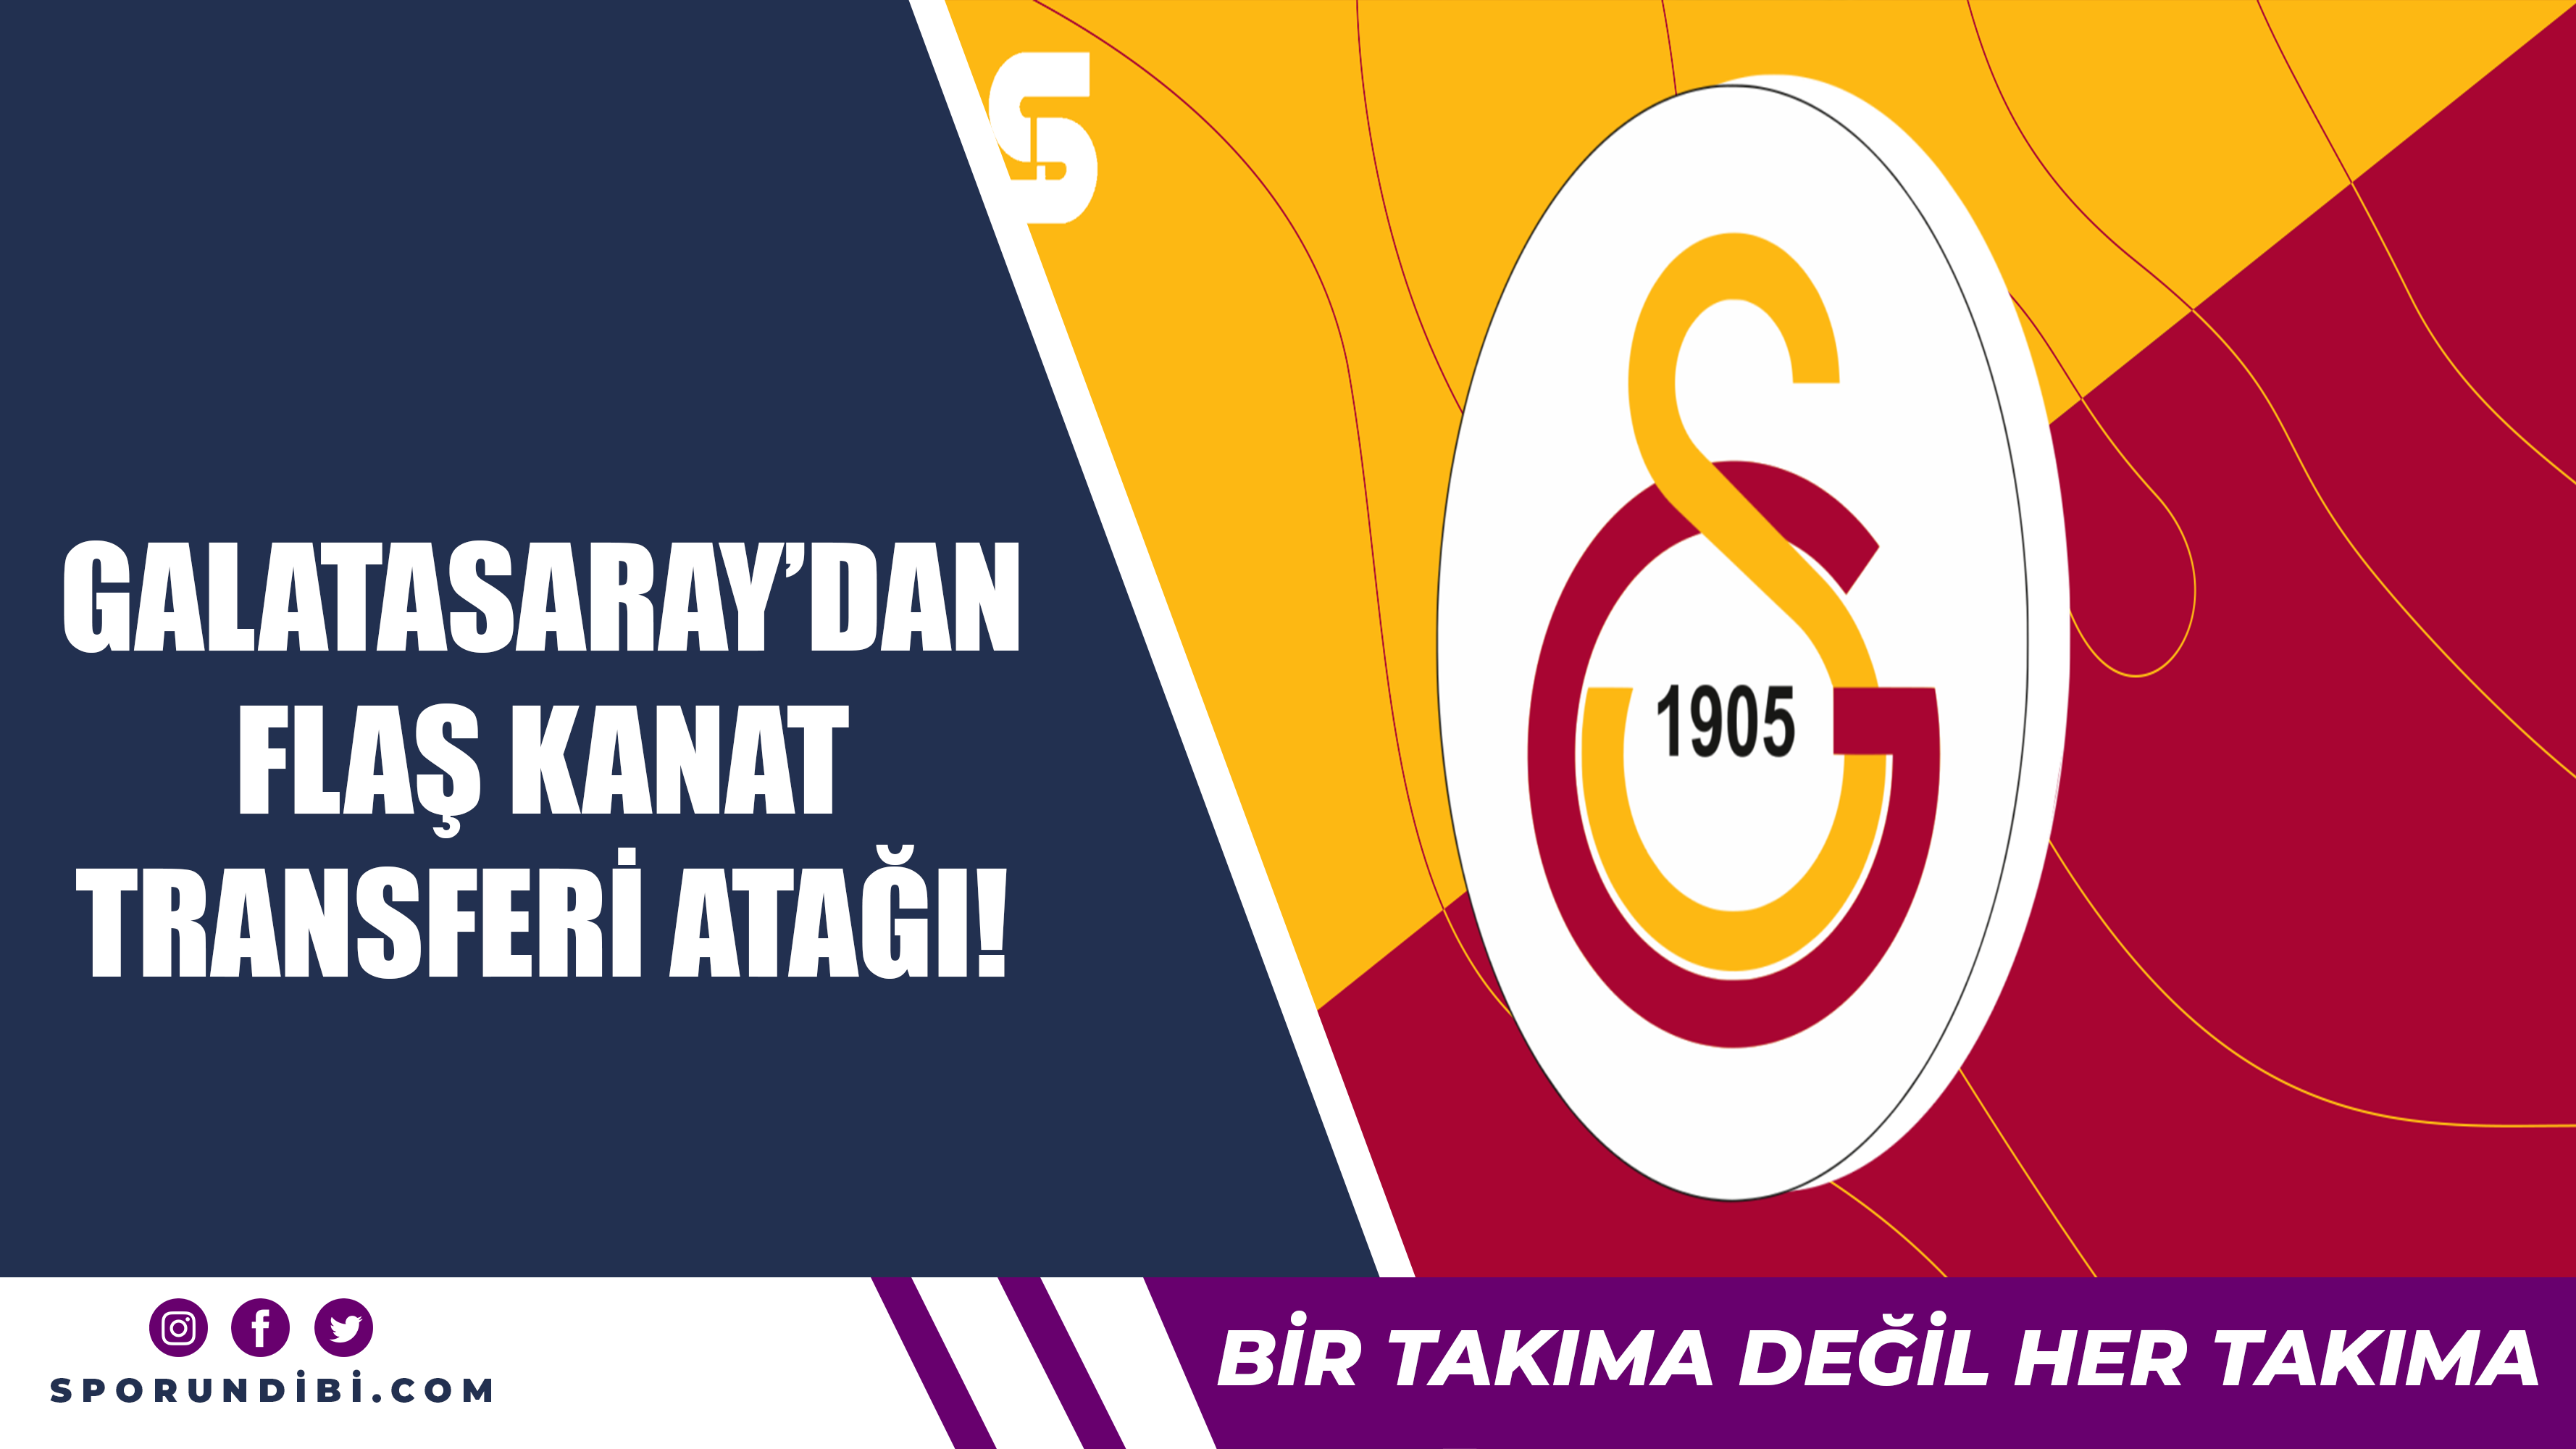 Galatasaray'dan flaş kanat transferi atağı!